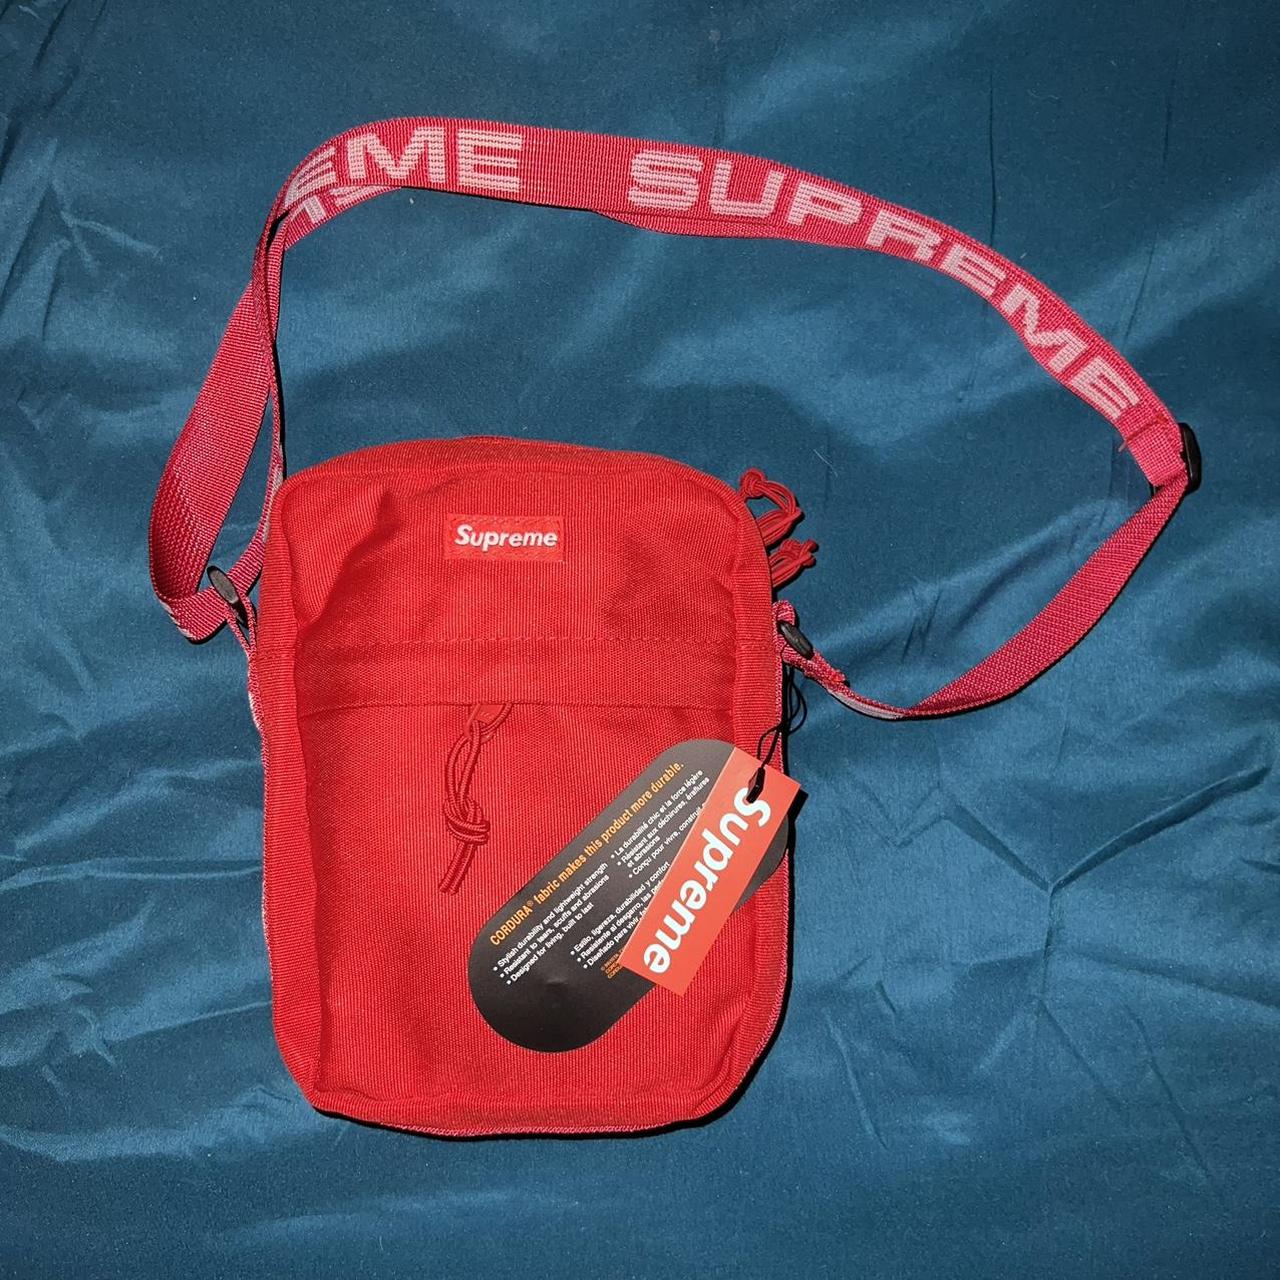 Supreme shoulder bag (SS18) Black cross body bag - Depop